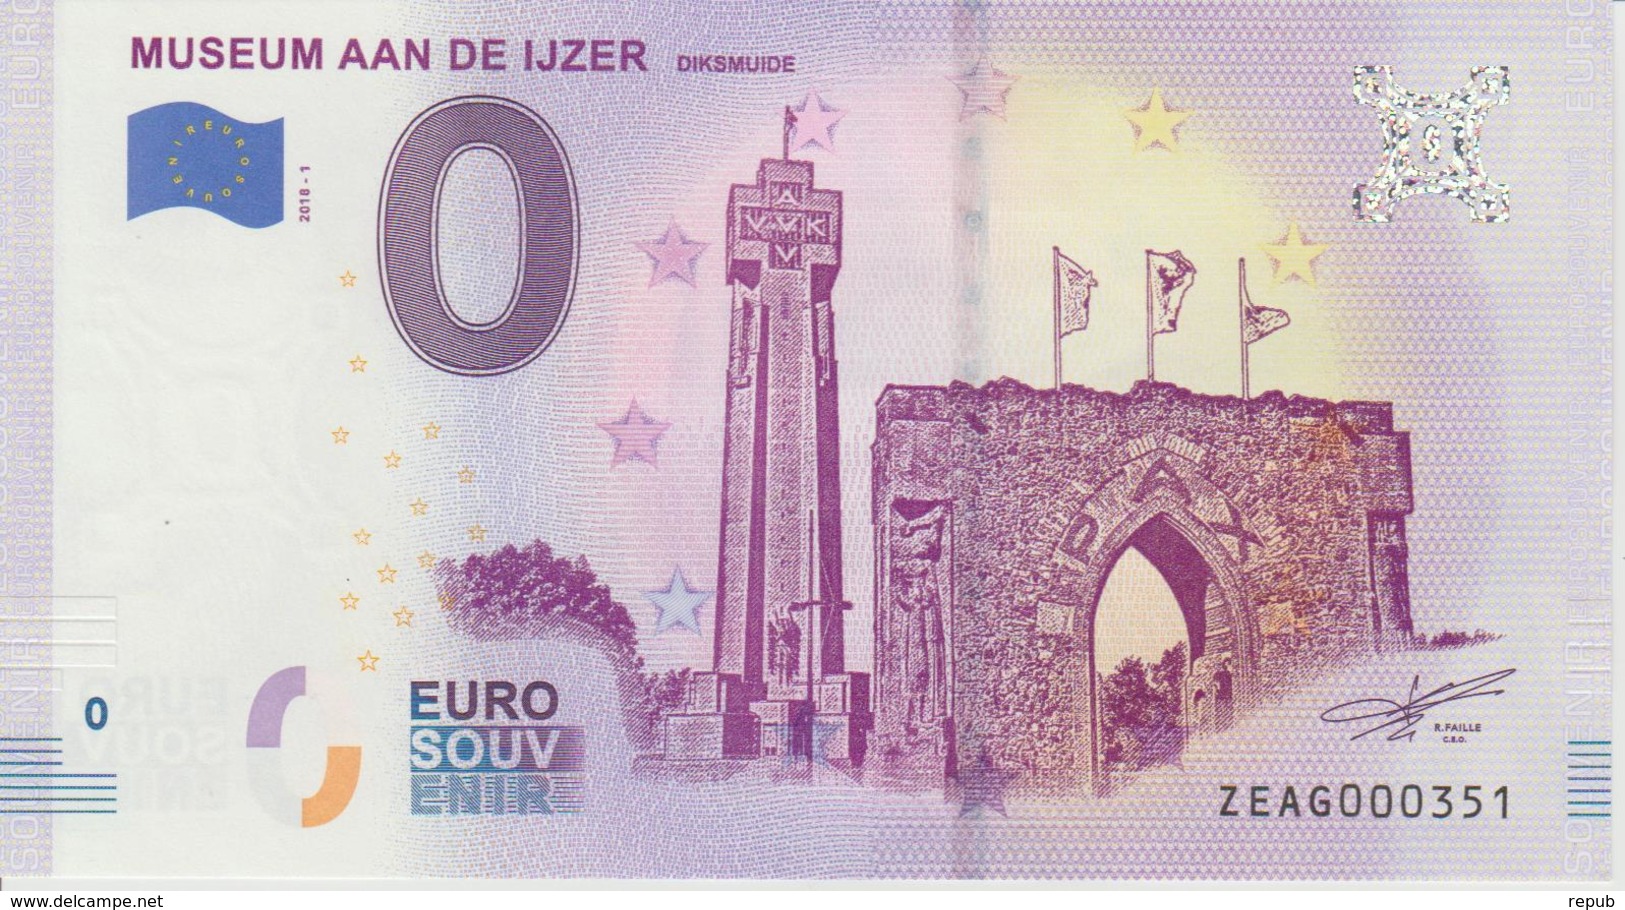 Billet Touristique 0 Euro Souvenir Belgique Museum Aan De Ijzer 2018-1 N°ZEAG000351 - Essais Privés / Non-officiels